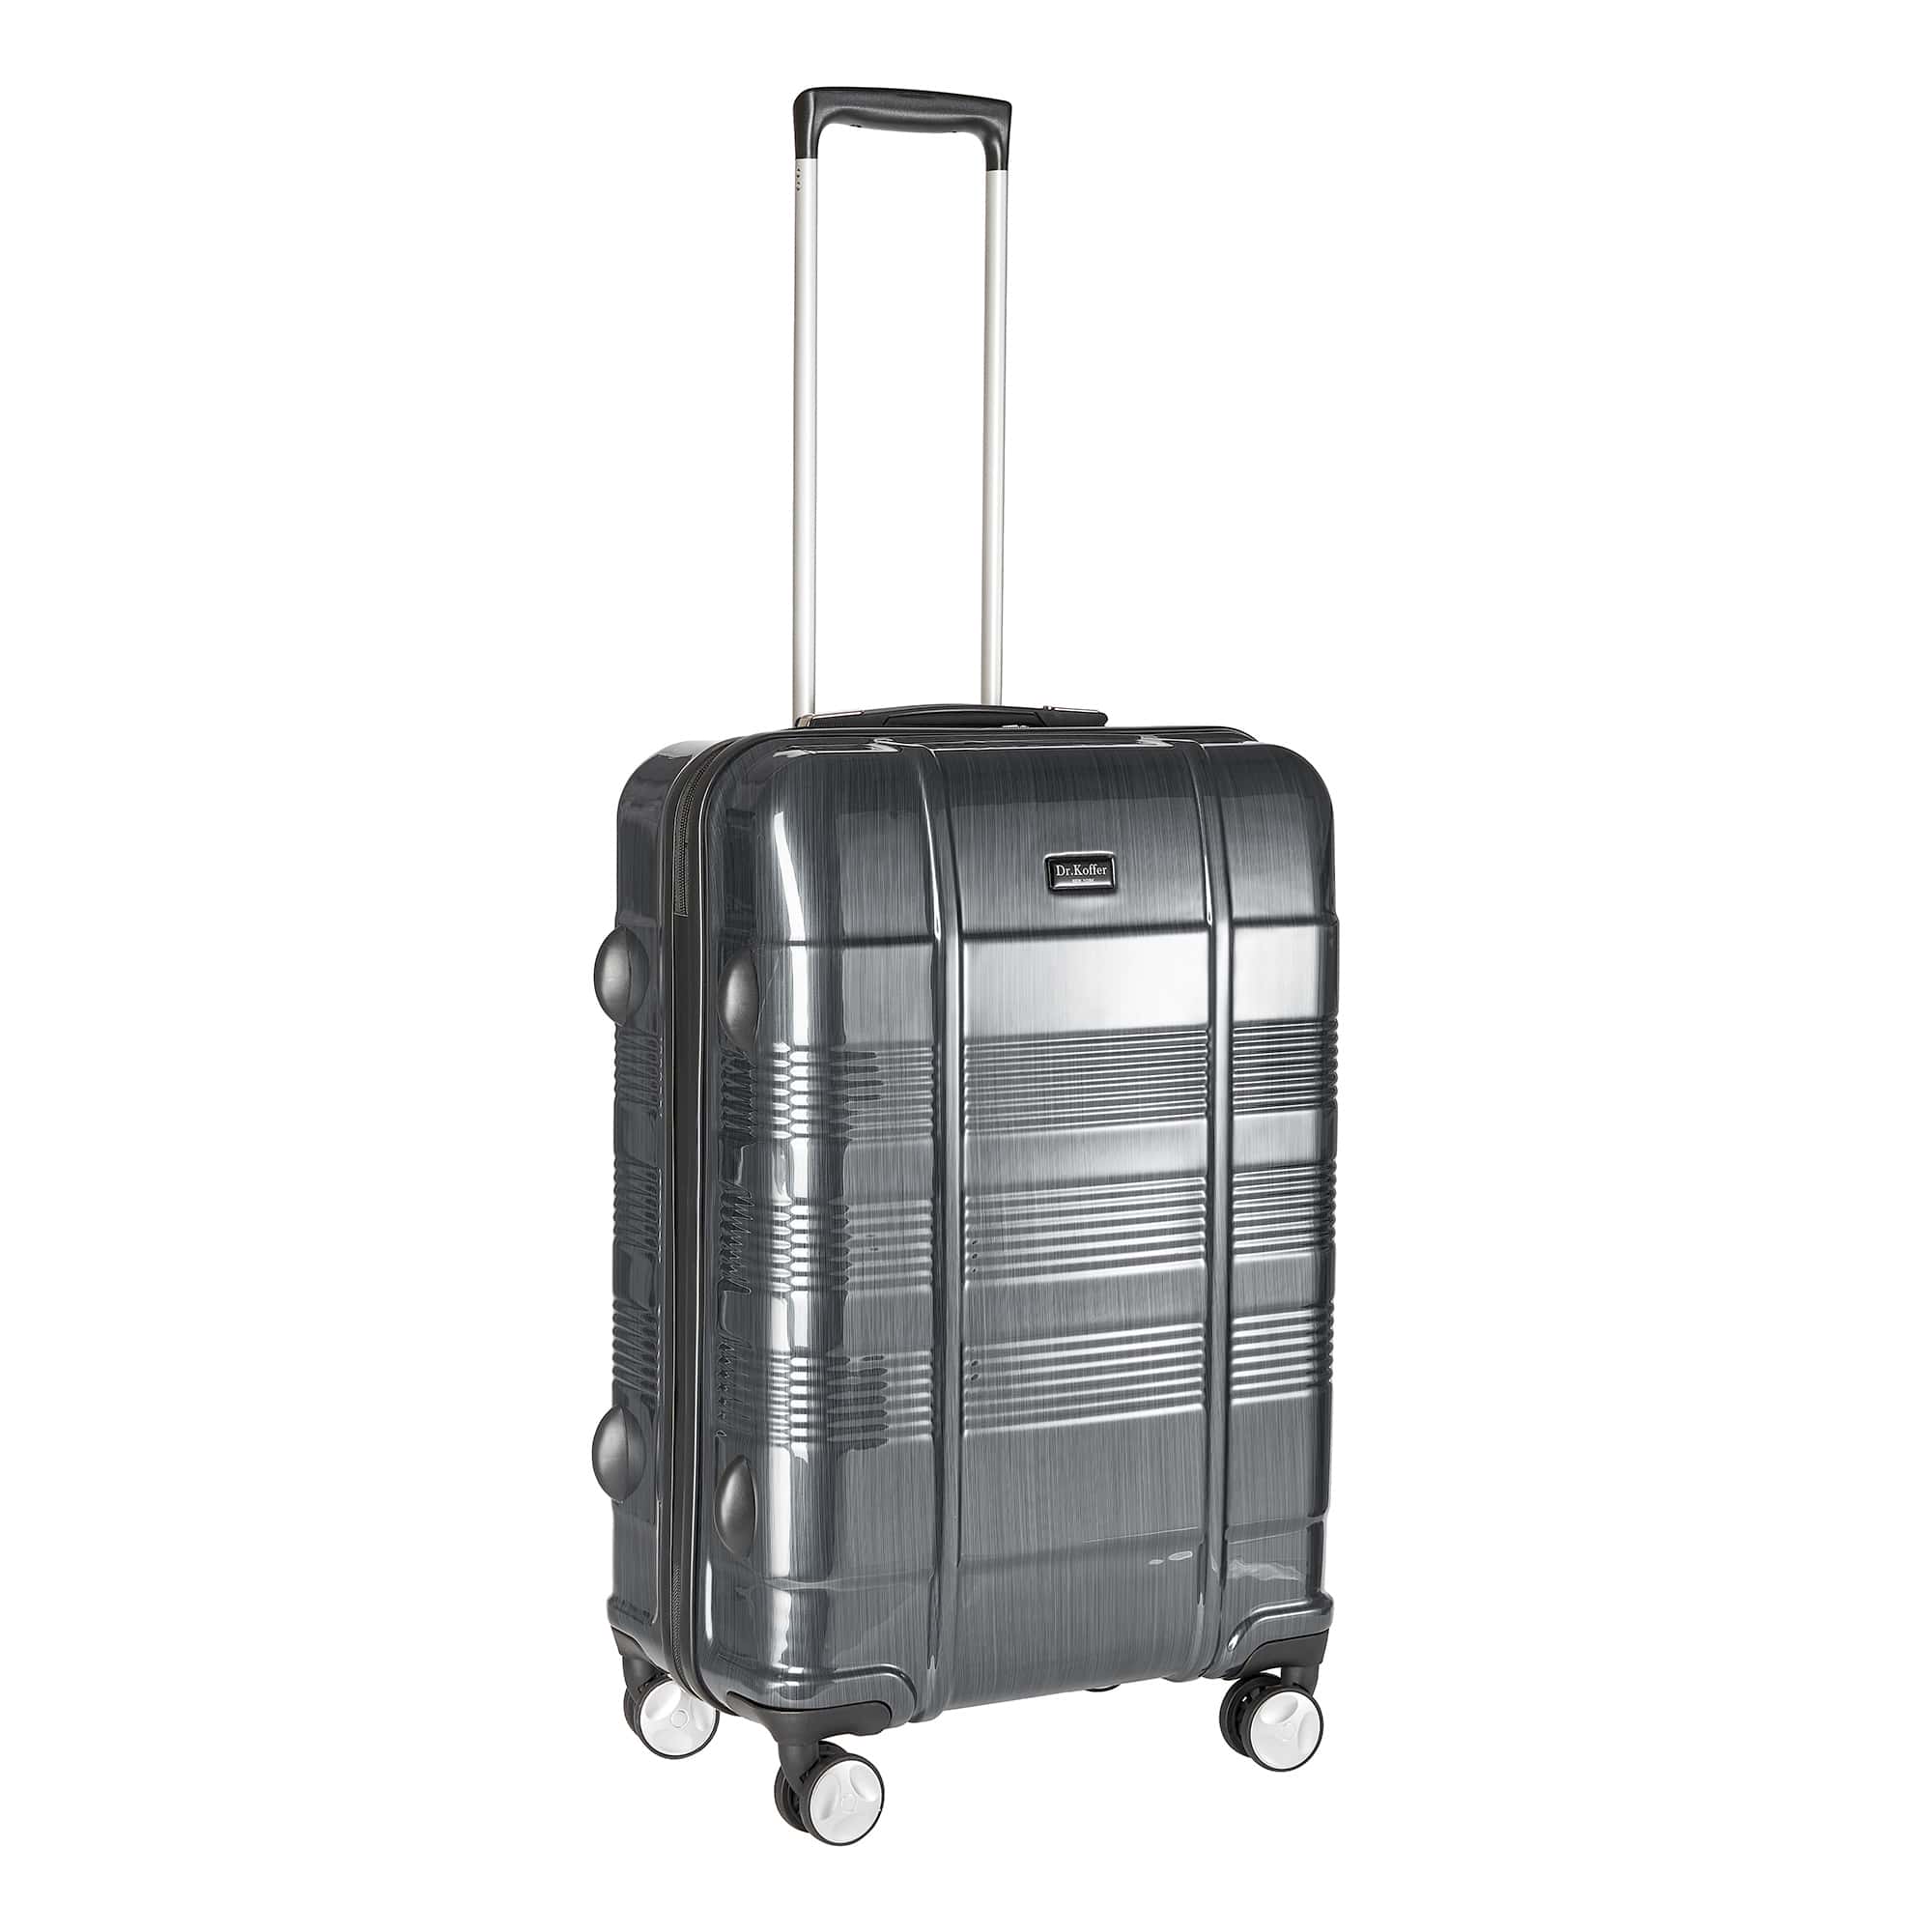 Др.Коффер L100TC19-250-27 чемодан, цвет серый - фото 1